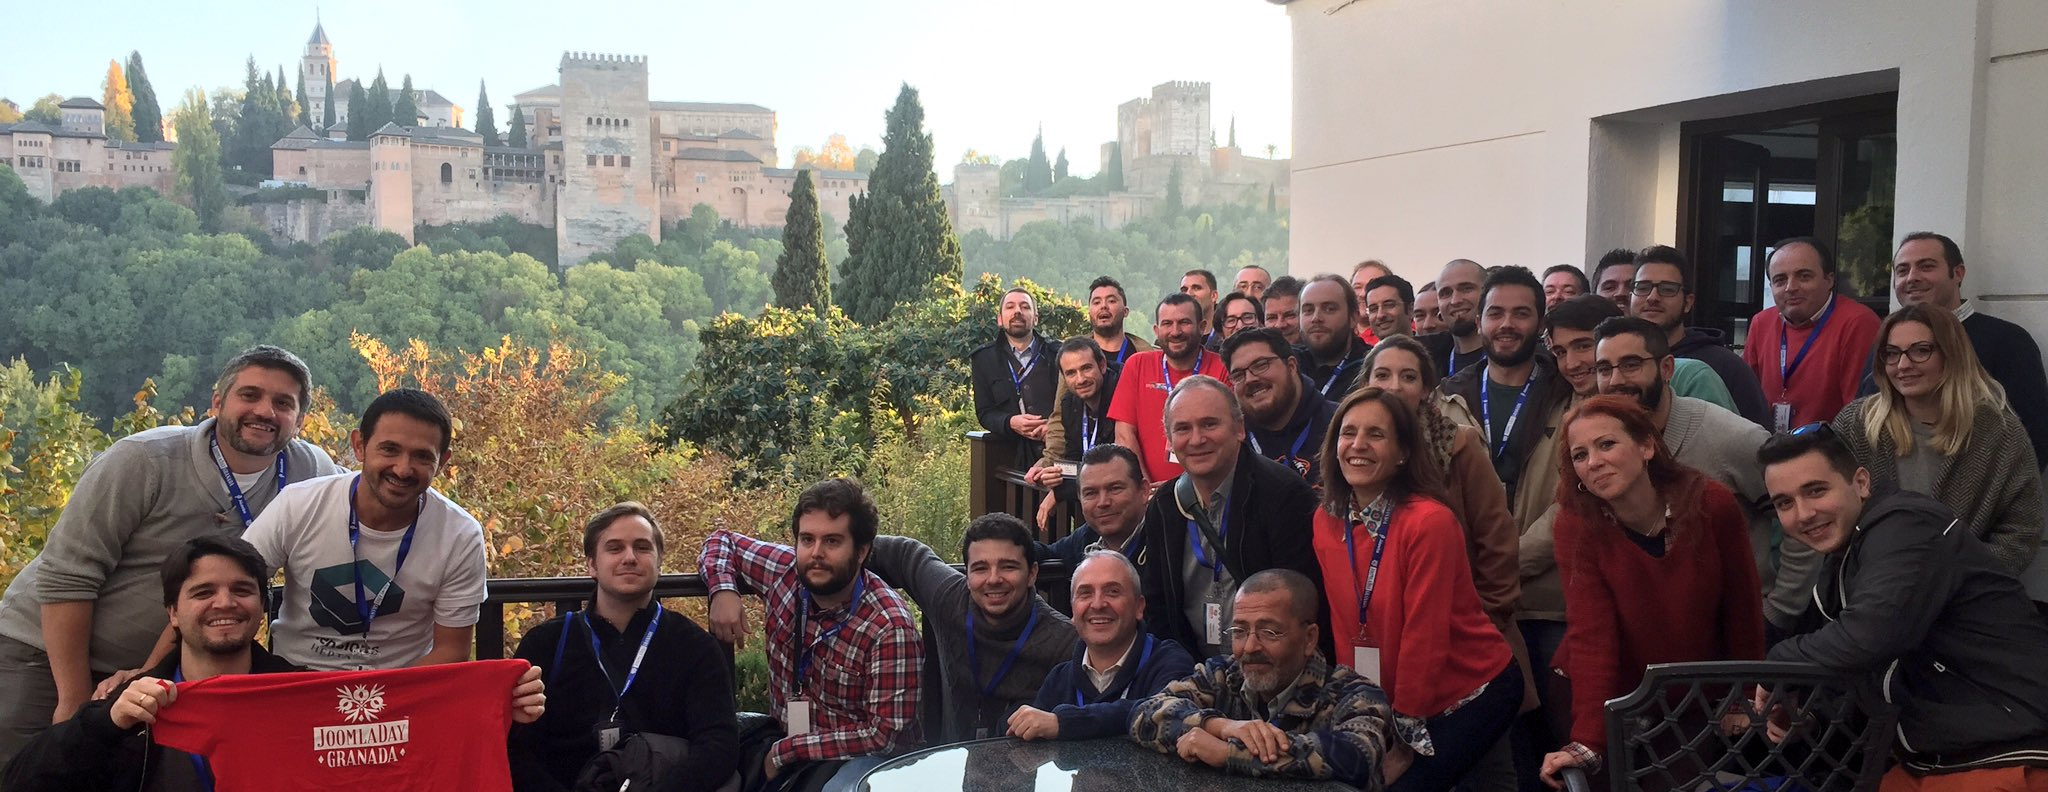 Foto grupal de los asistentes al Joomla Day Granada 2016